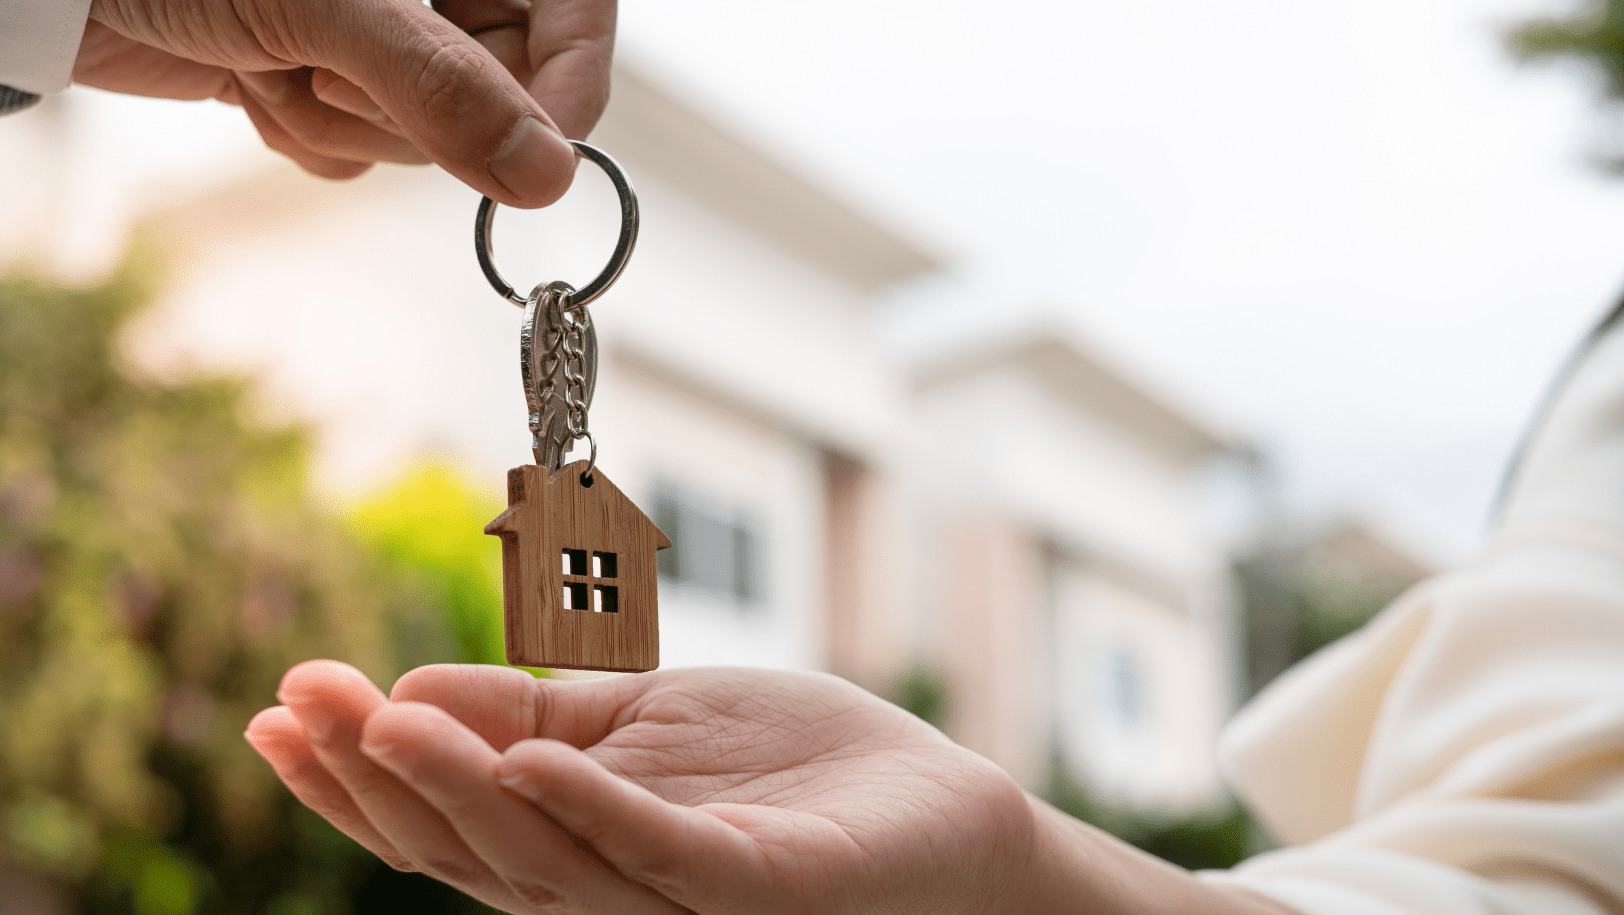 Vysnívaný byt kúpený pomocou hypotéky a úveru